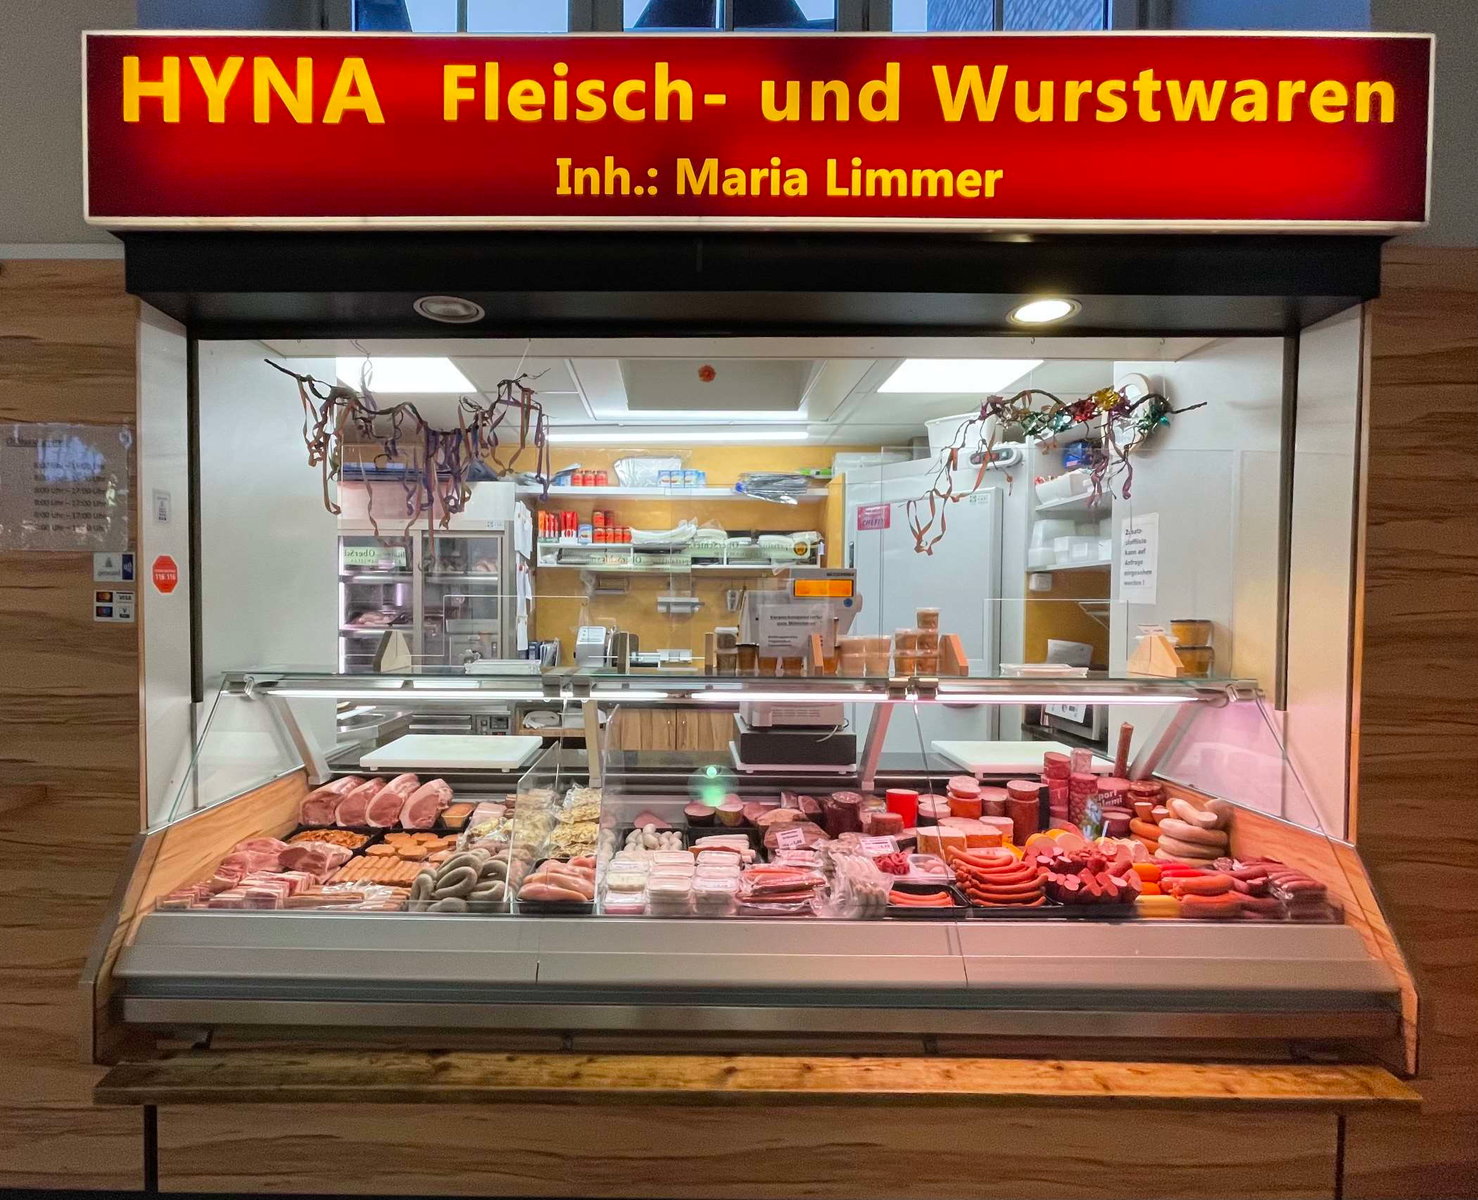 Hyna Fleisch- und Wurstwaren in Augsburg